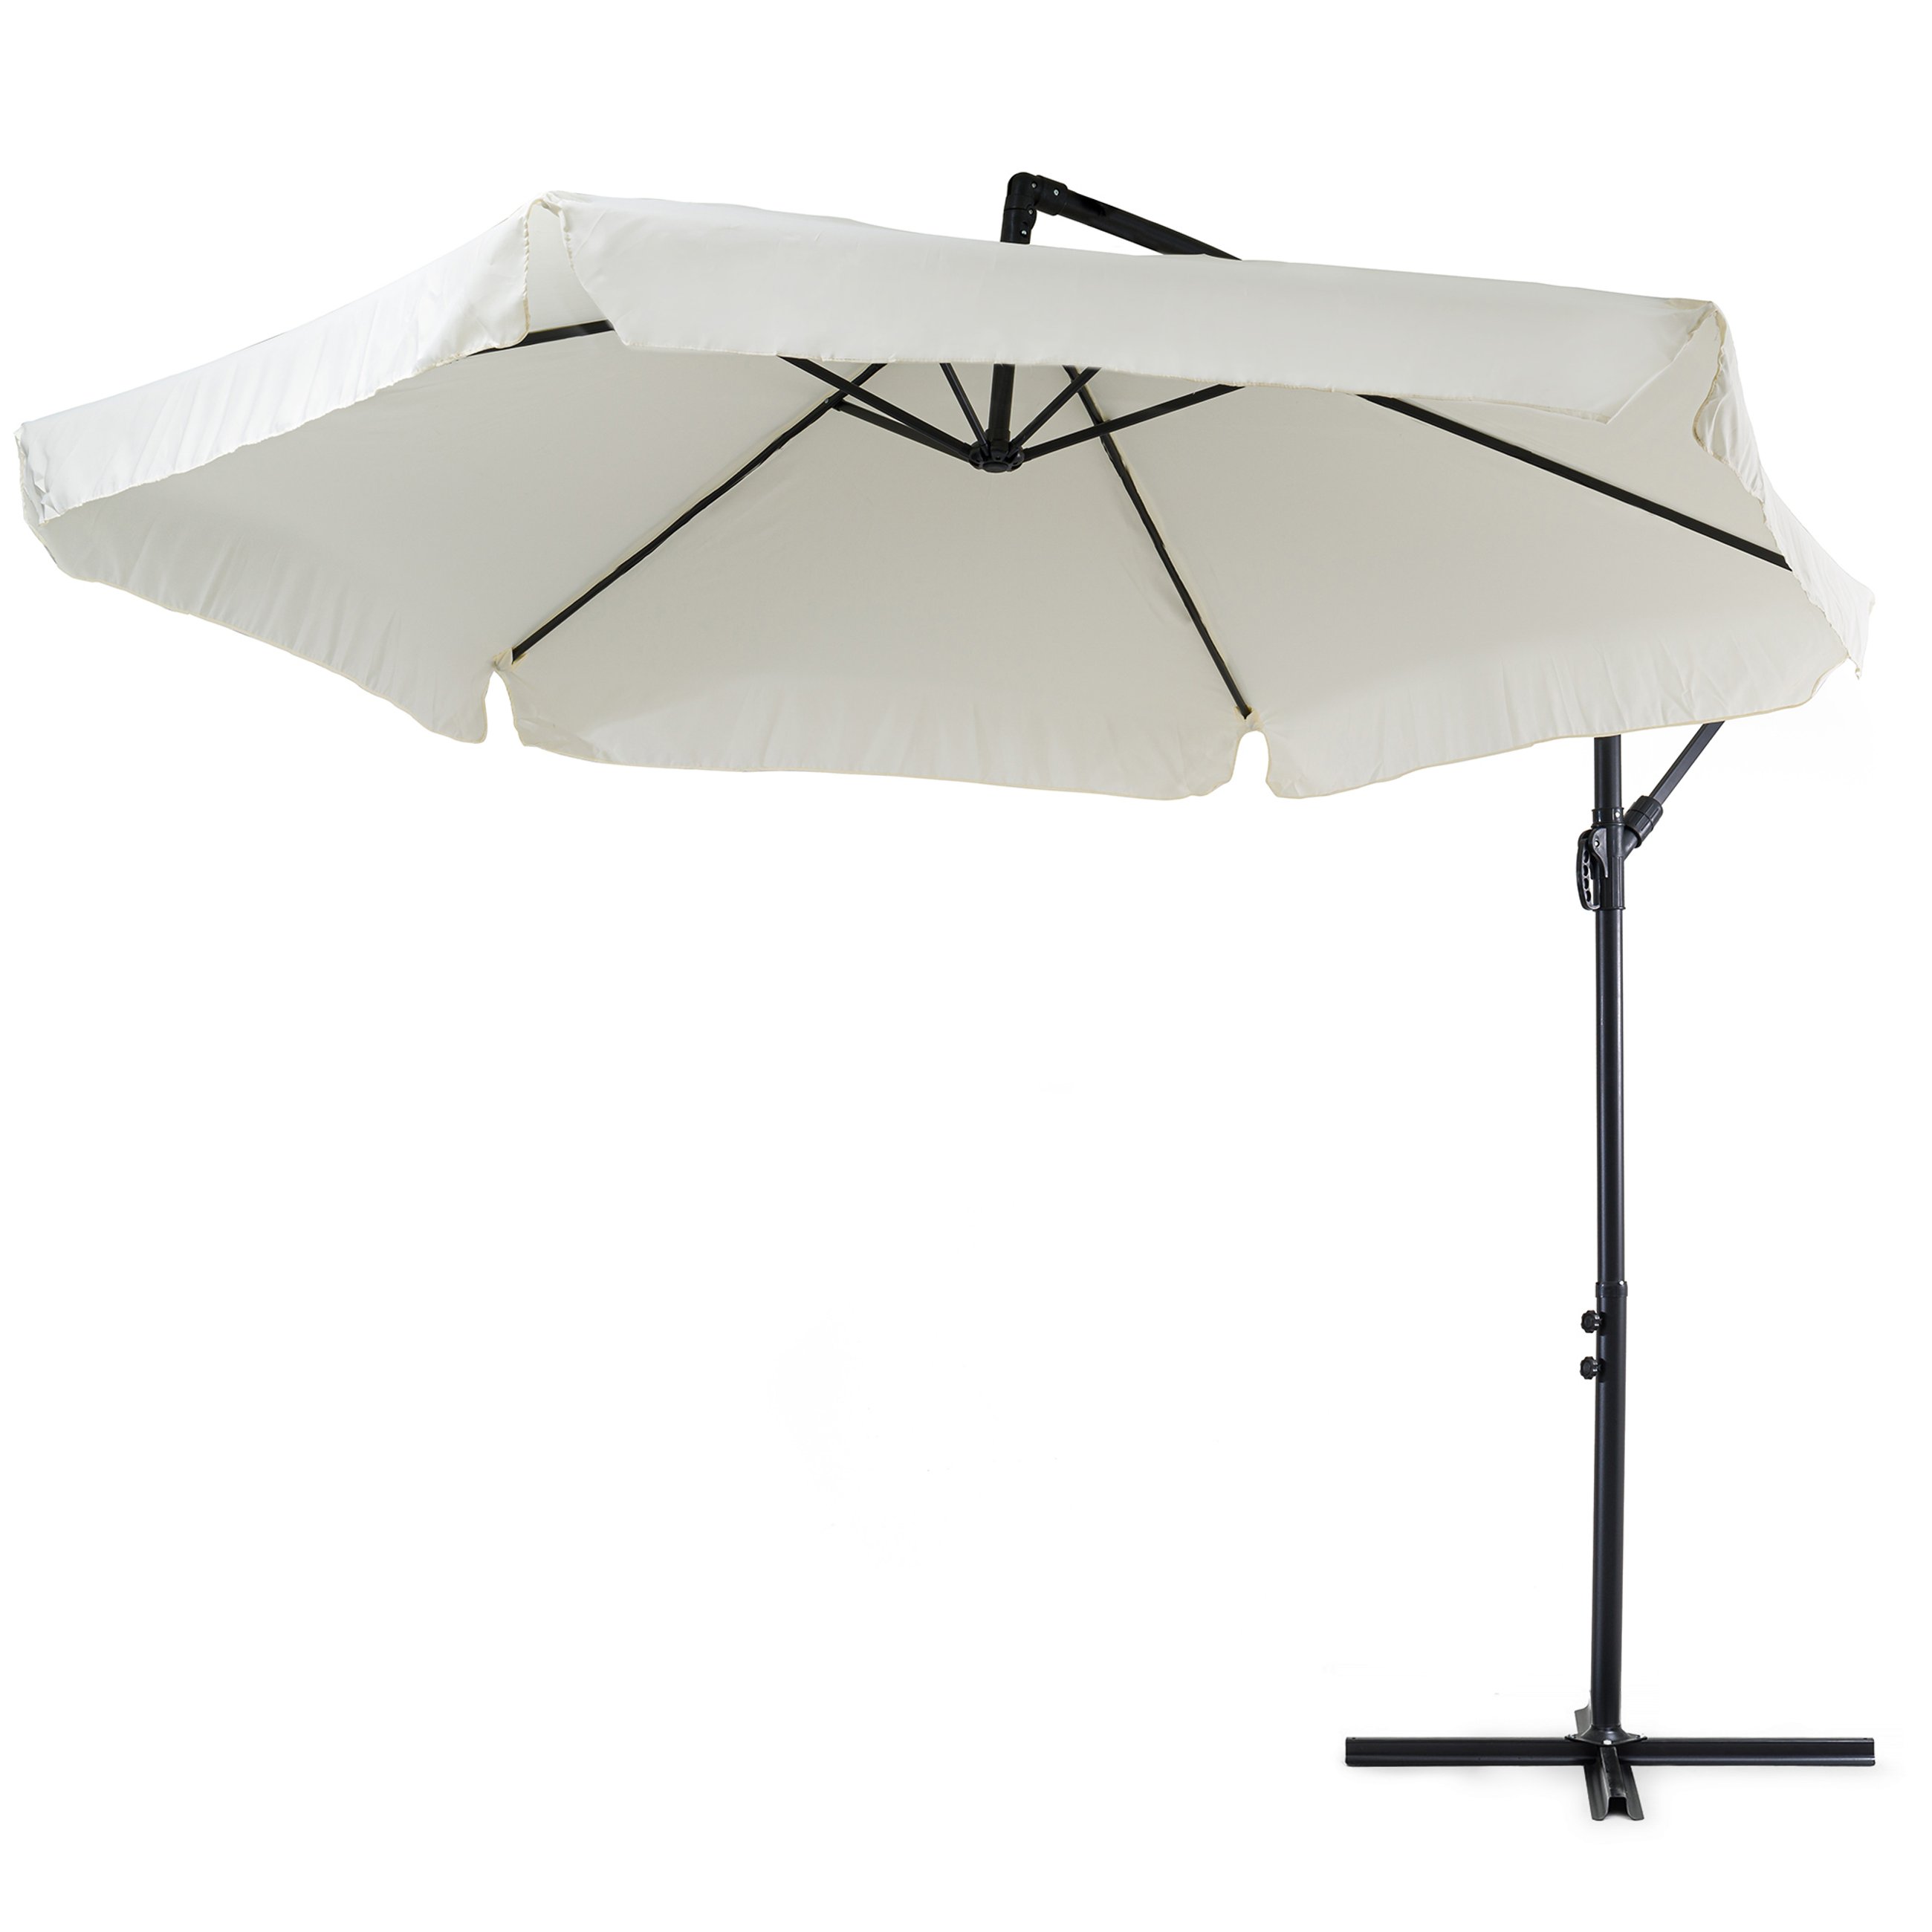 Poszycie parasola Empoli kremowe wykonane jest z grubej poliestrowej tkaniny